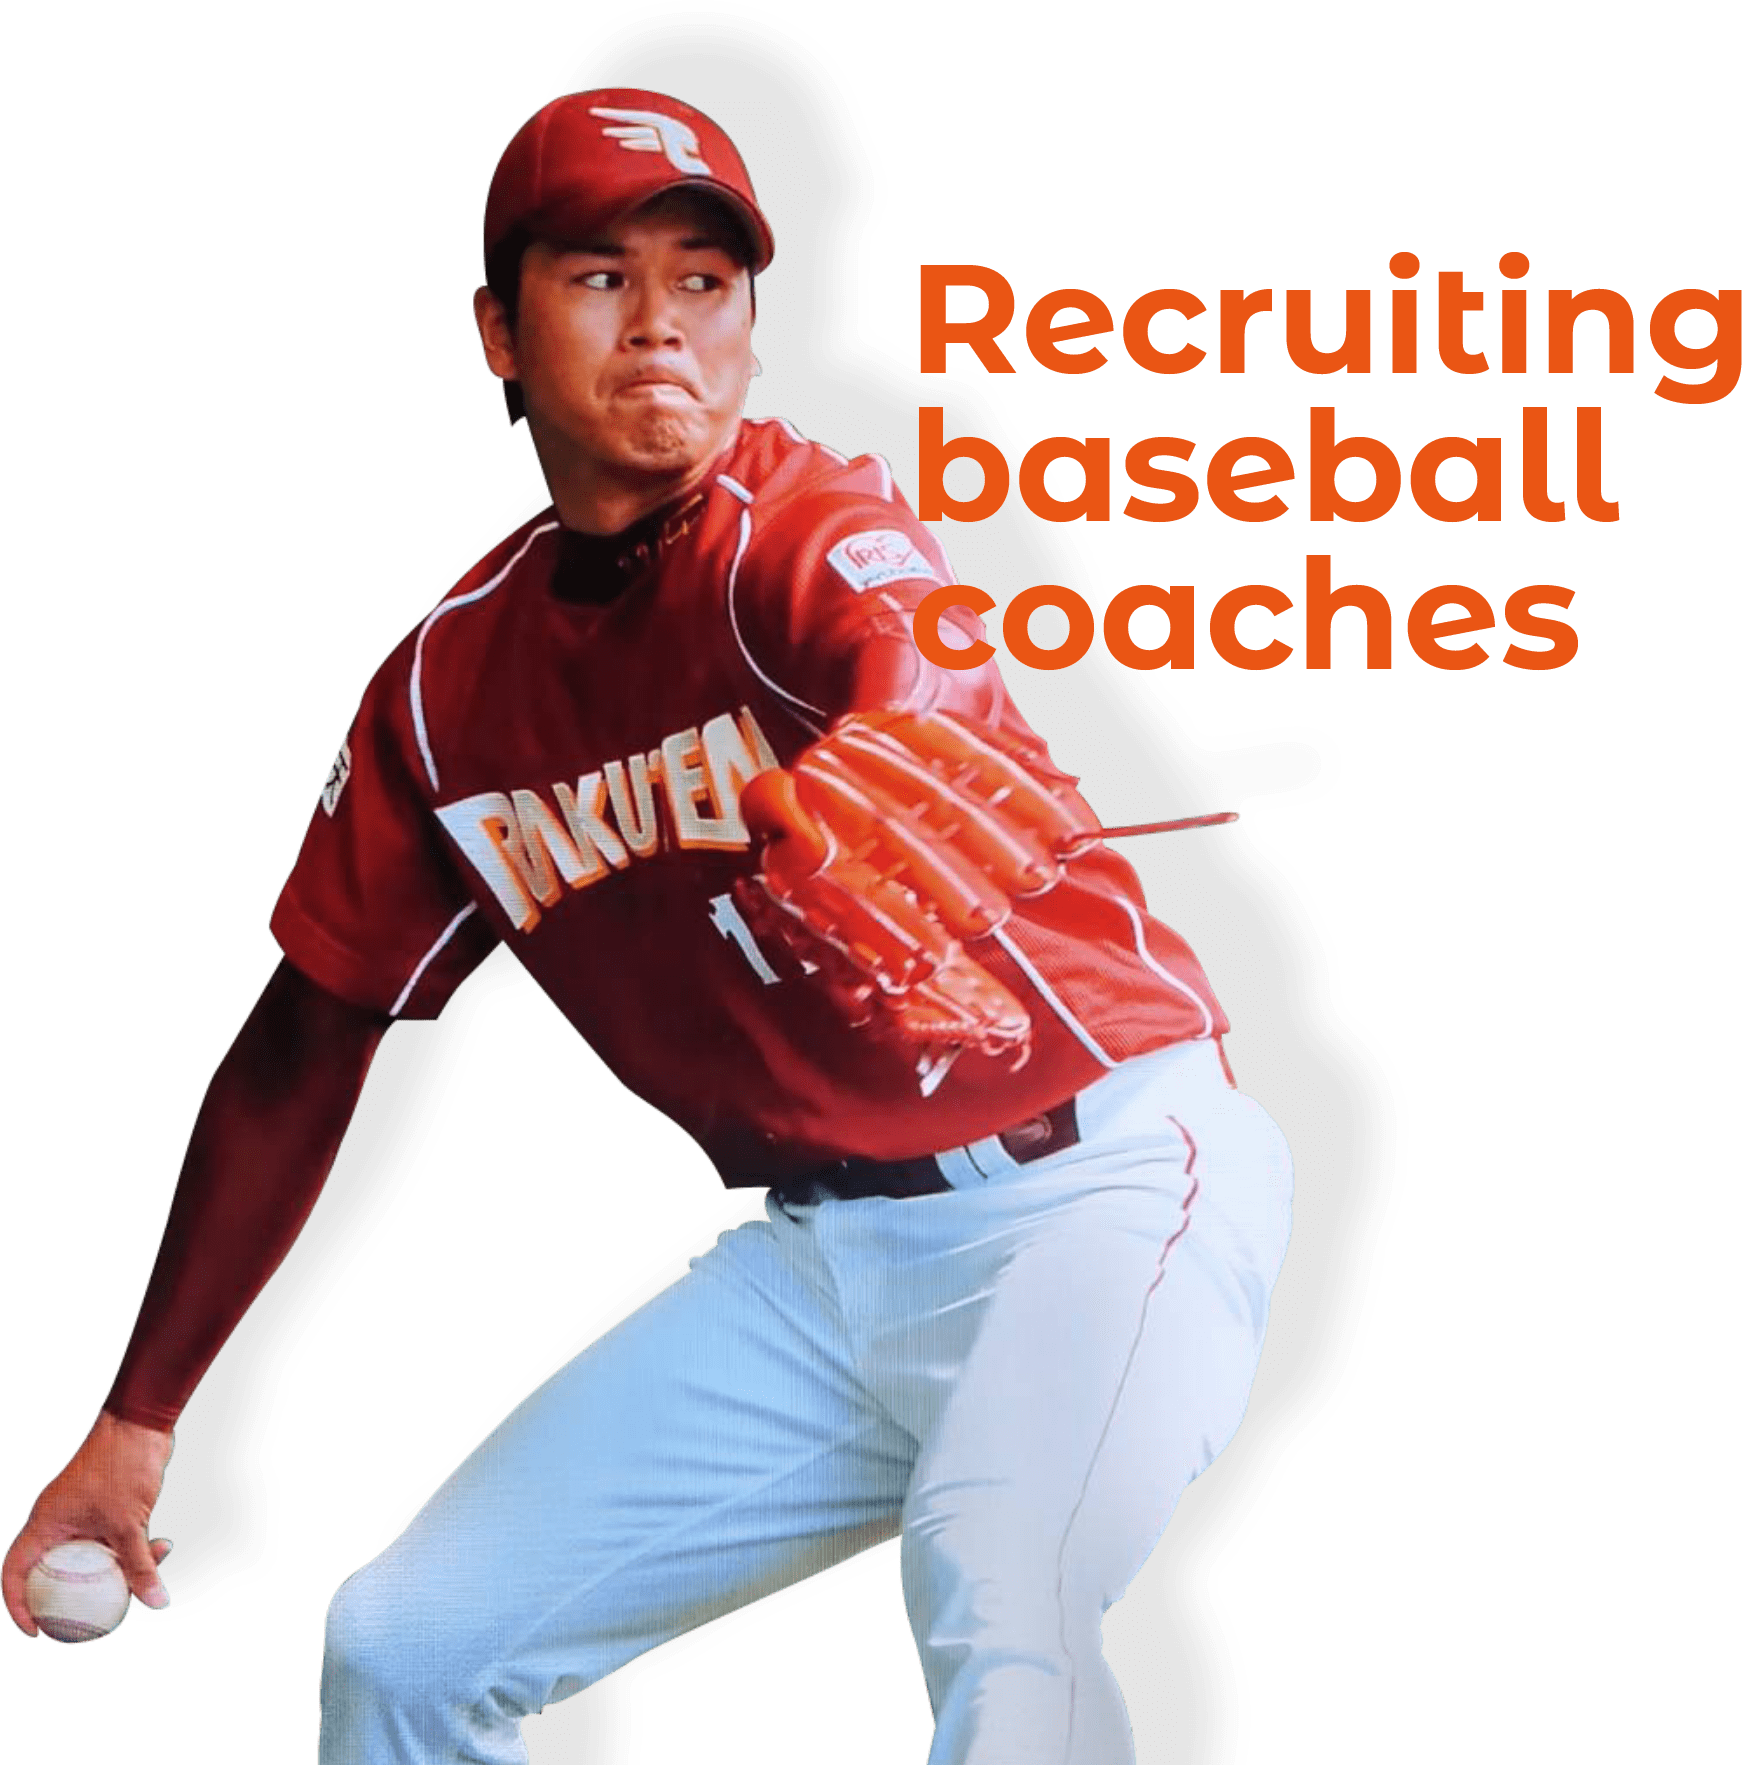 Recruiting baseball coaches